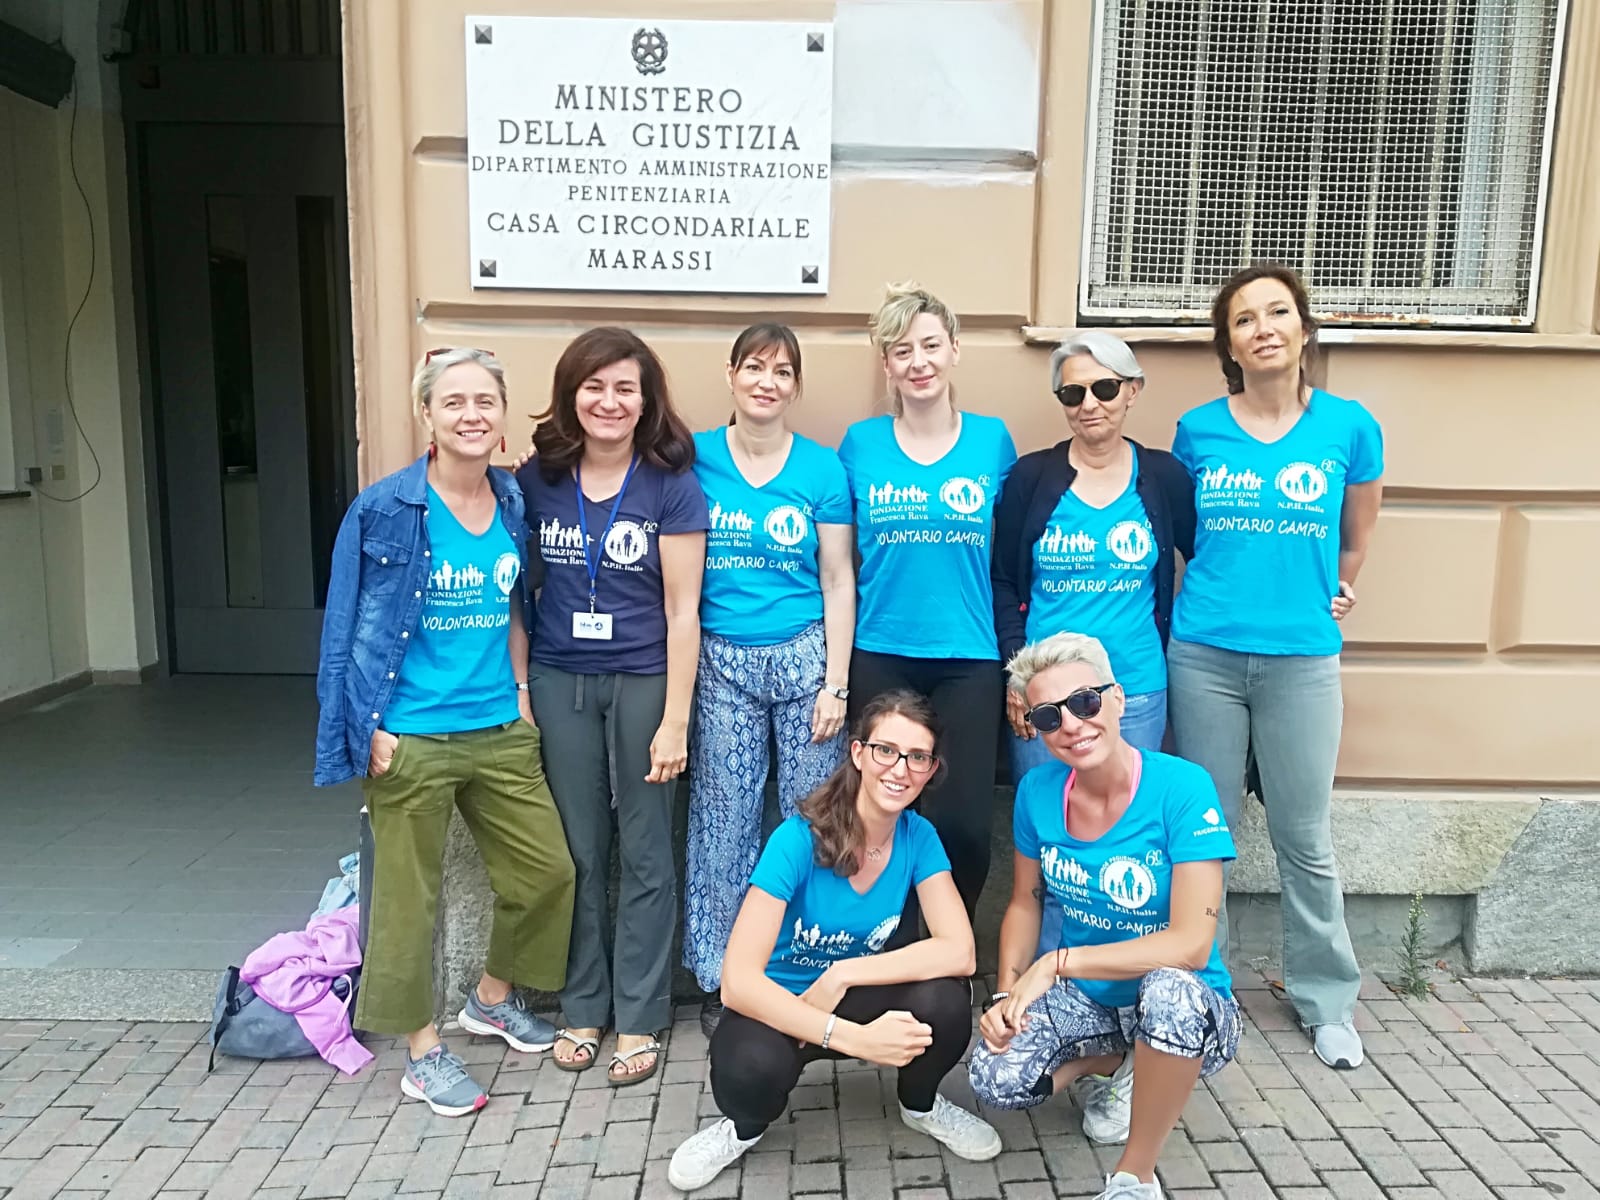 Campus solidale a Genova della Fondazione Francesca Rava all’interno della Casa Circondariale Marassi. Un ponte tra carcere e città